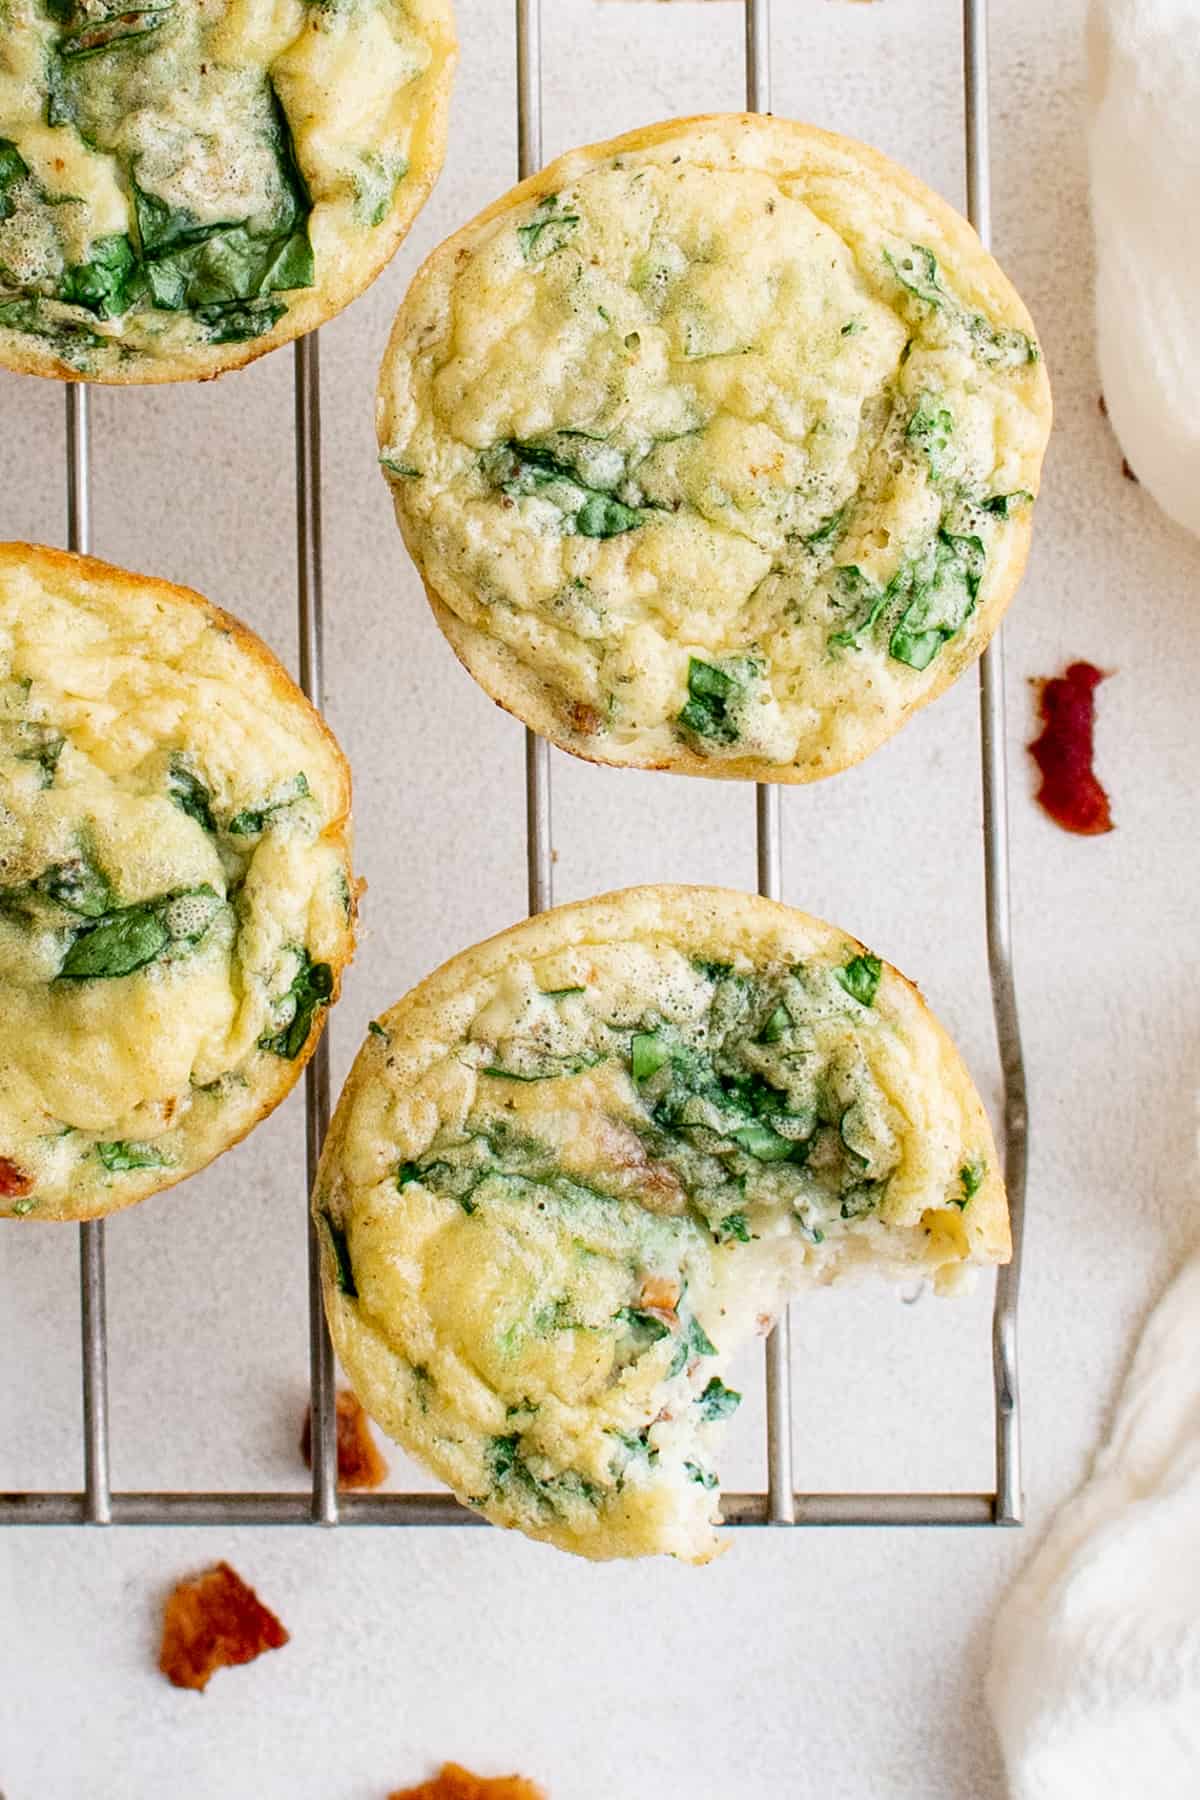 Copycat Oven Baked Starbucks Egg Bites Recipe